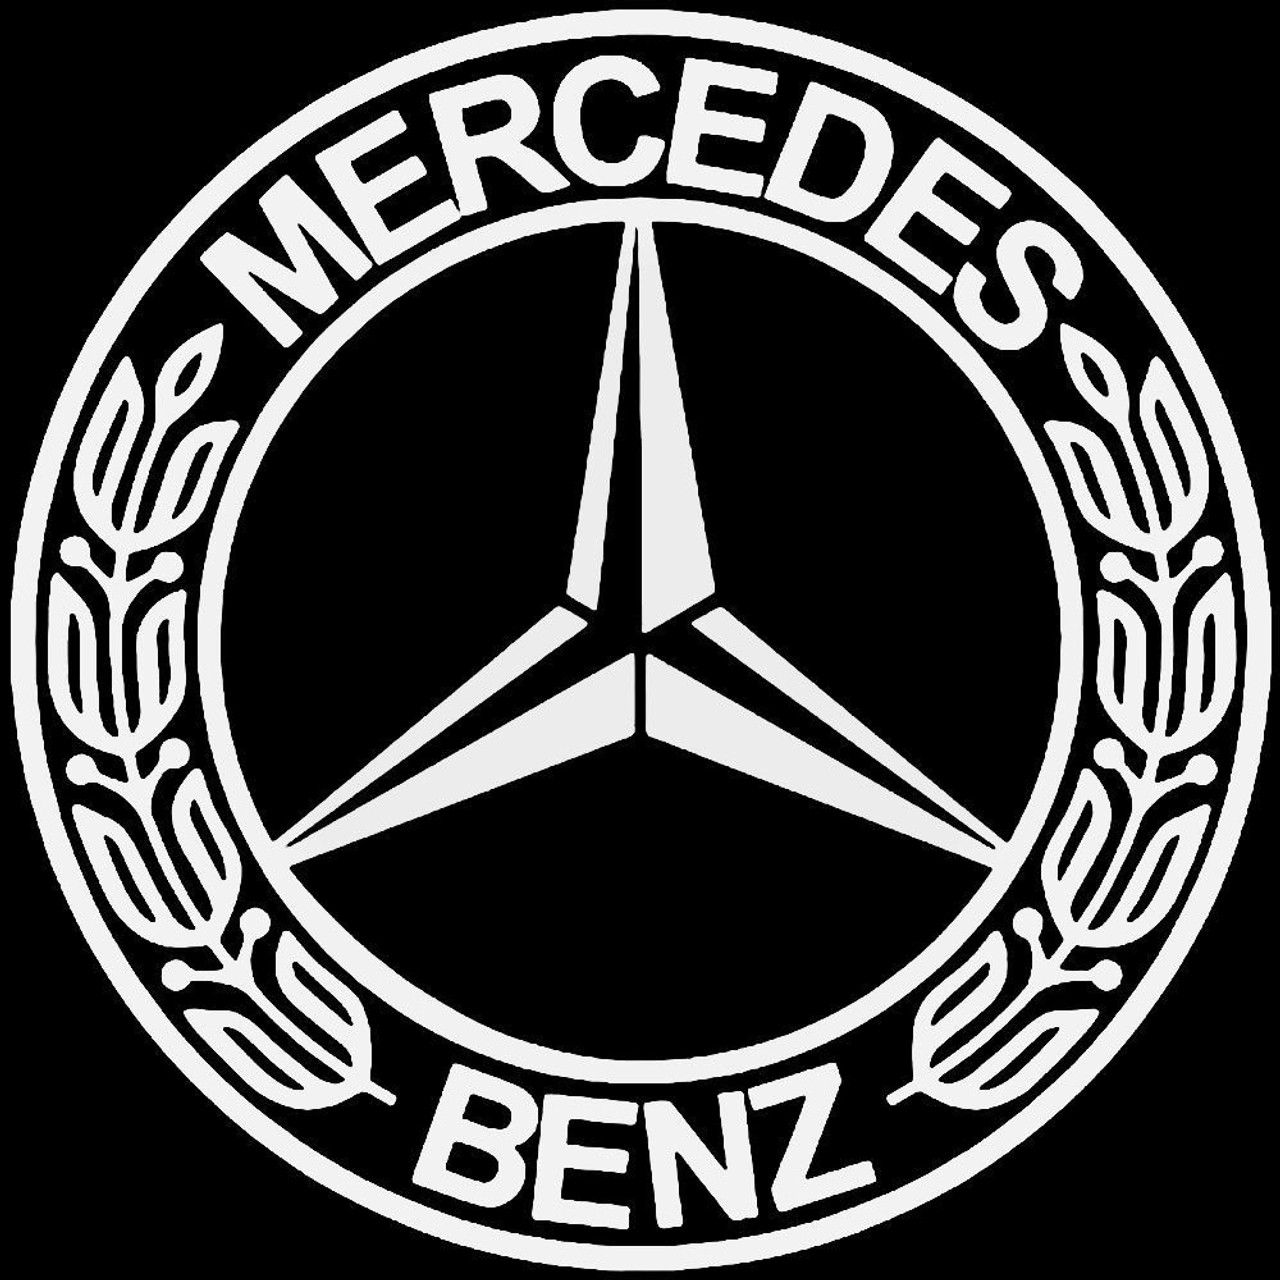 Overgave Spektakel Karu Mercedes Benz Emblem Vinyl Decal Sticker